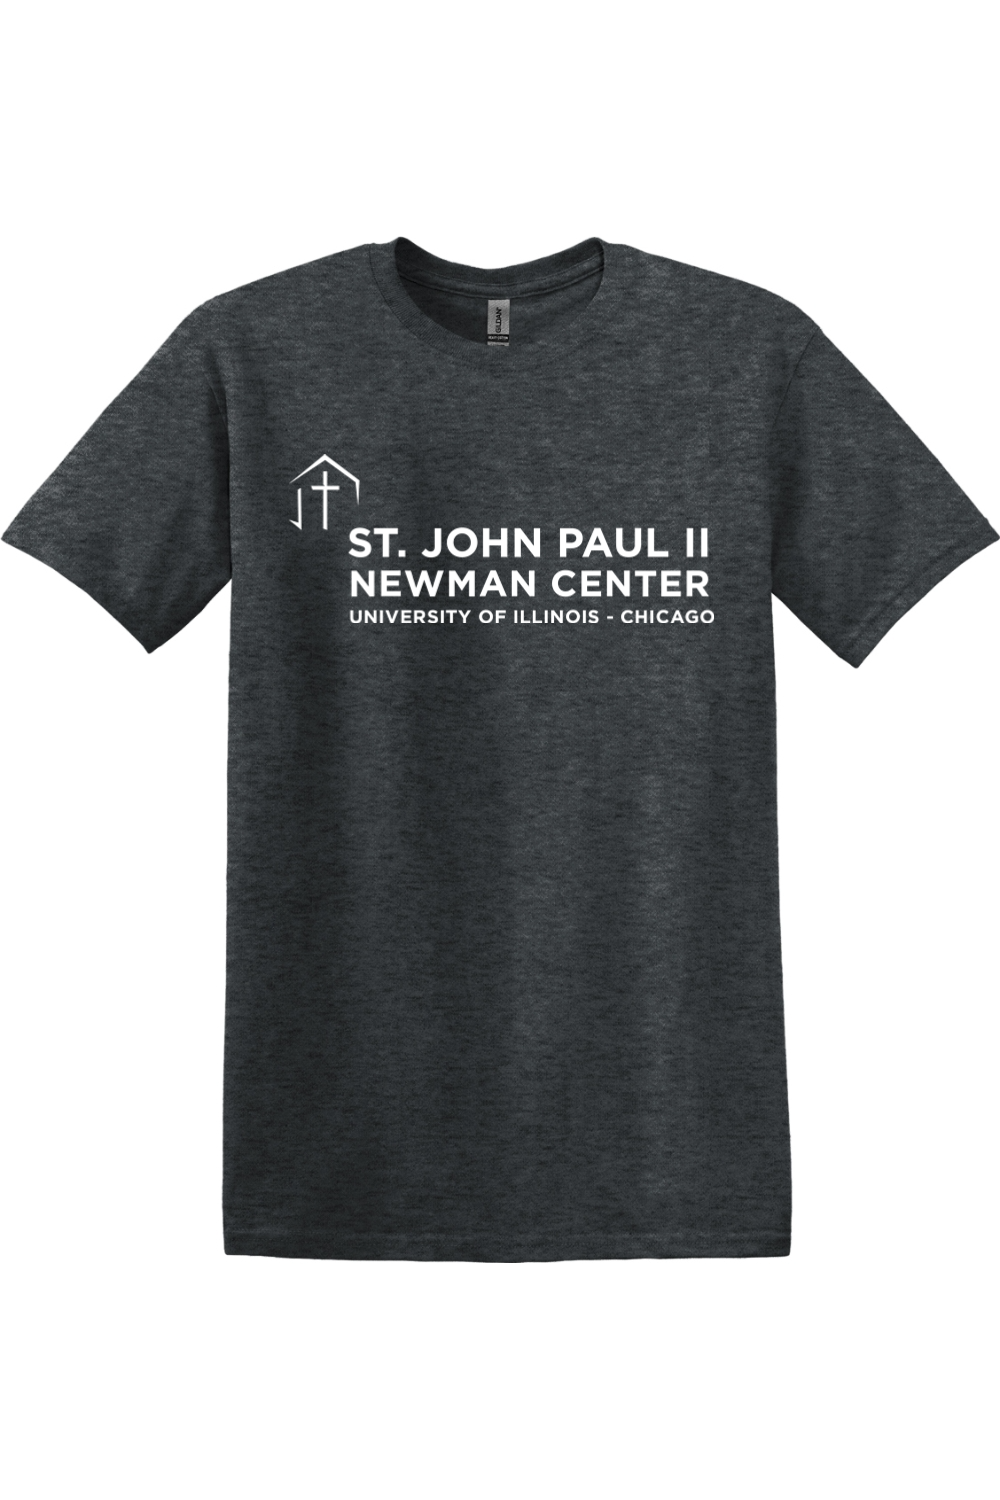 St. John Paul II Newman Center T-Shirt